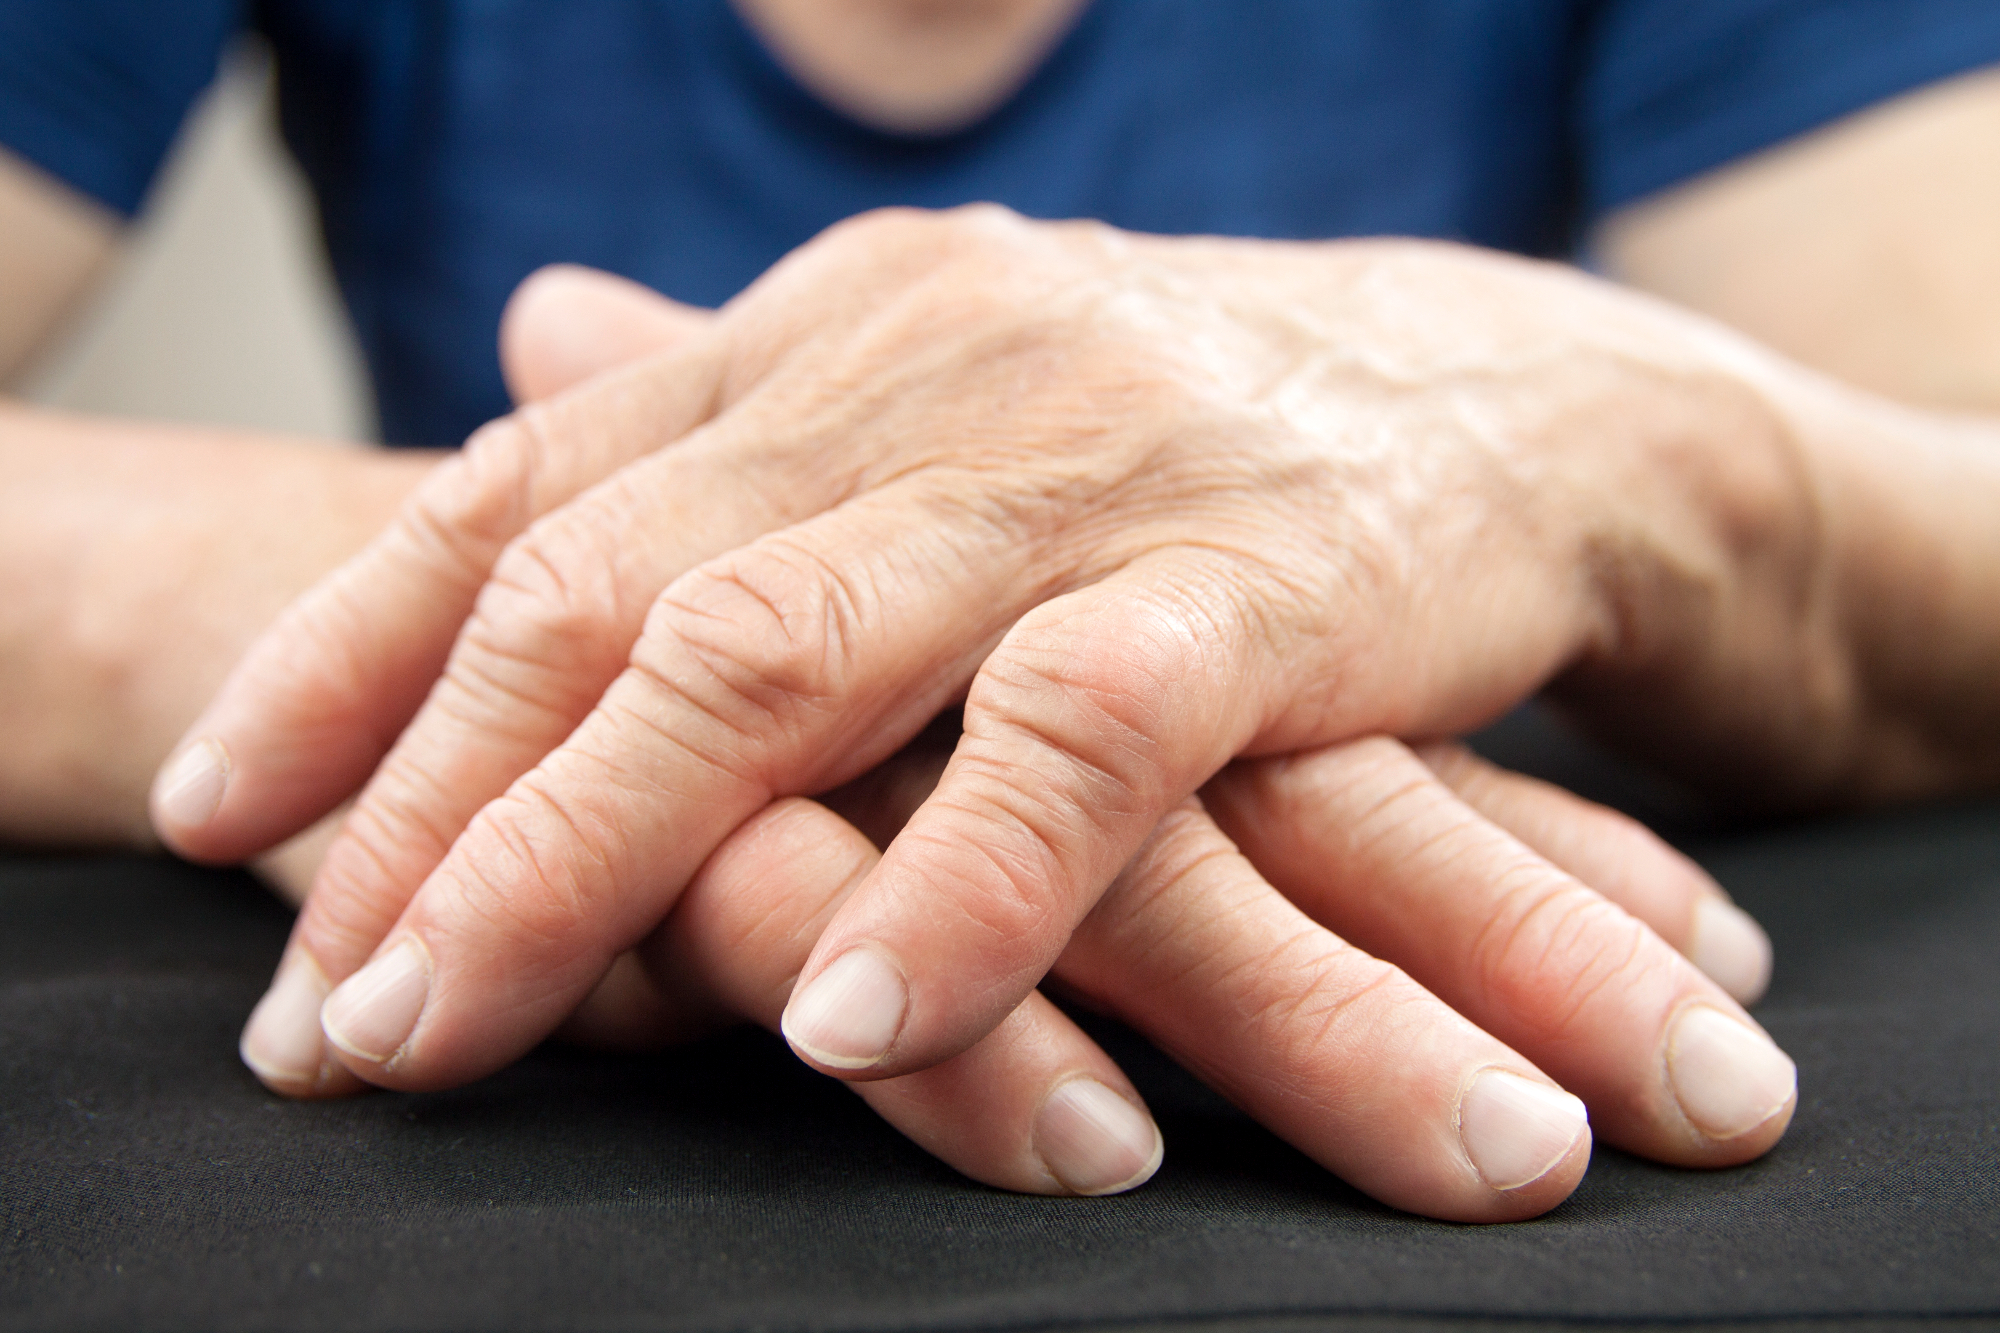 Revmatoidni artritis lahko prizadene vse sklepe ter obsklepne dele